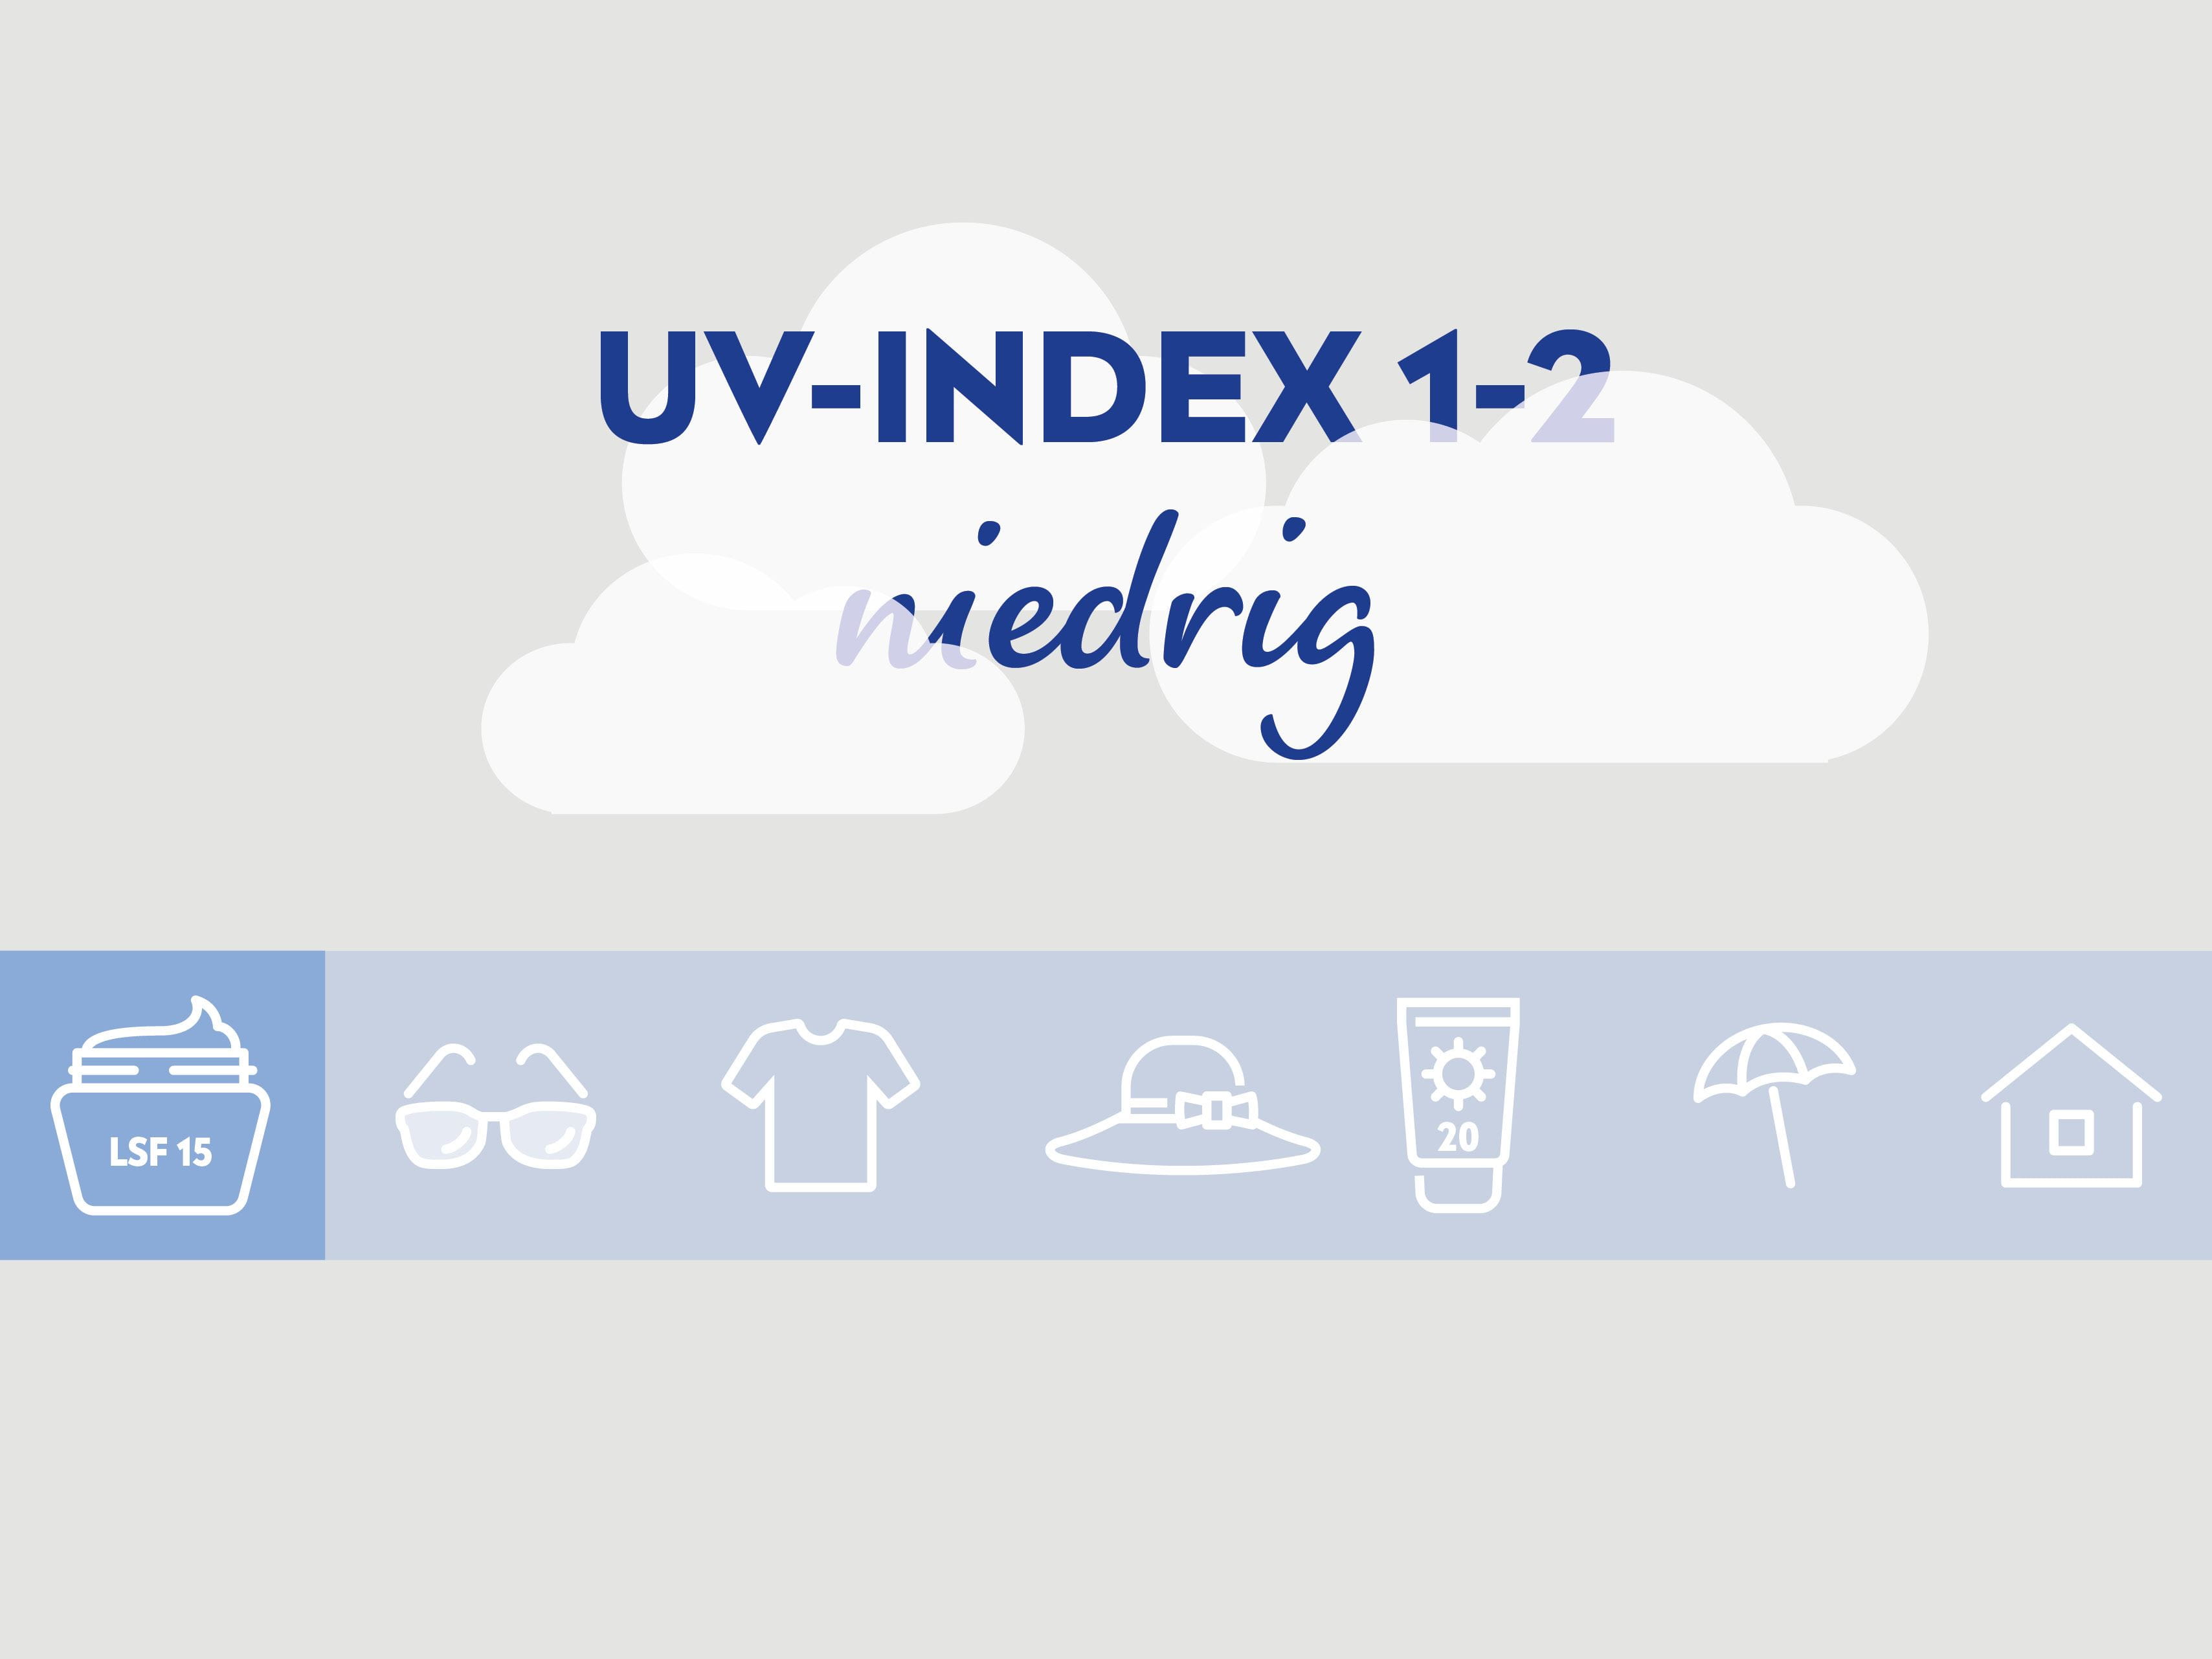 Bei einem niedrigen UV-Index von 1-2 sollte man eine Tagescreme mit LSF 15 anwenden.